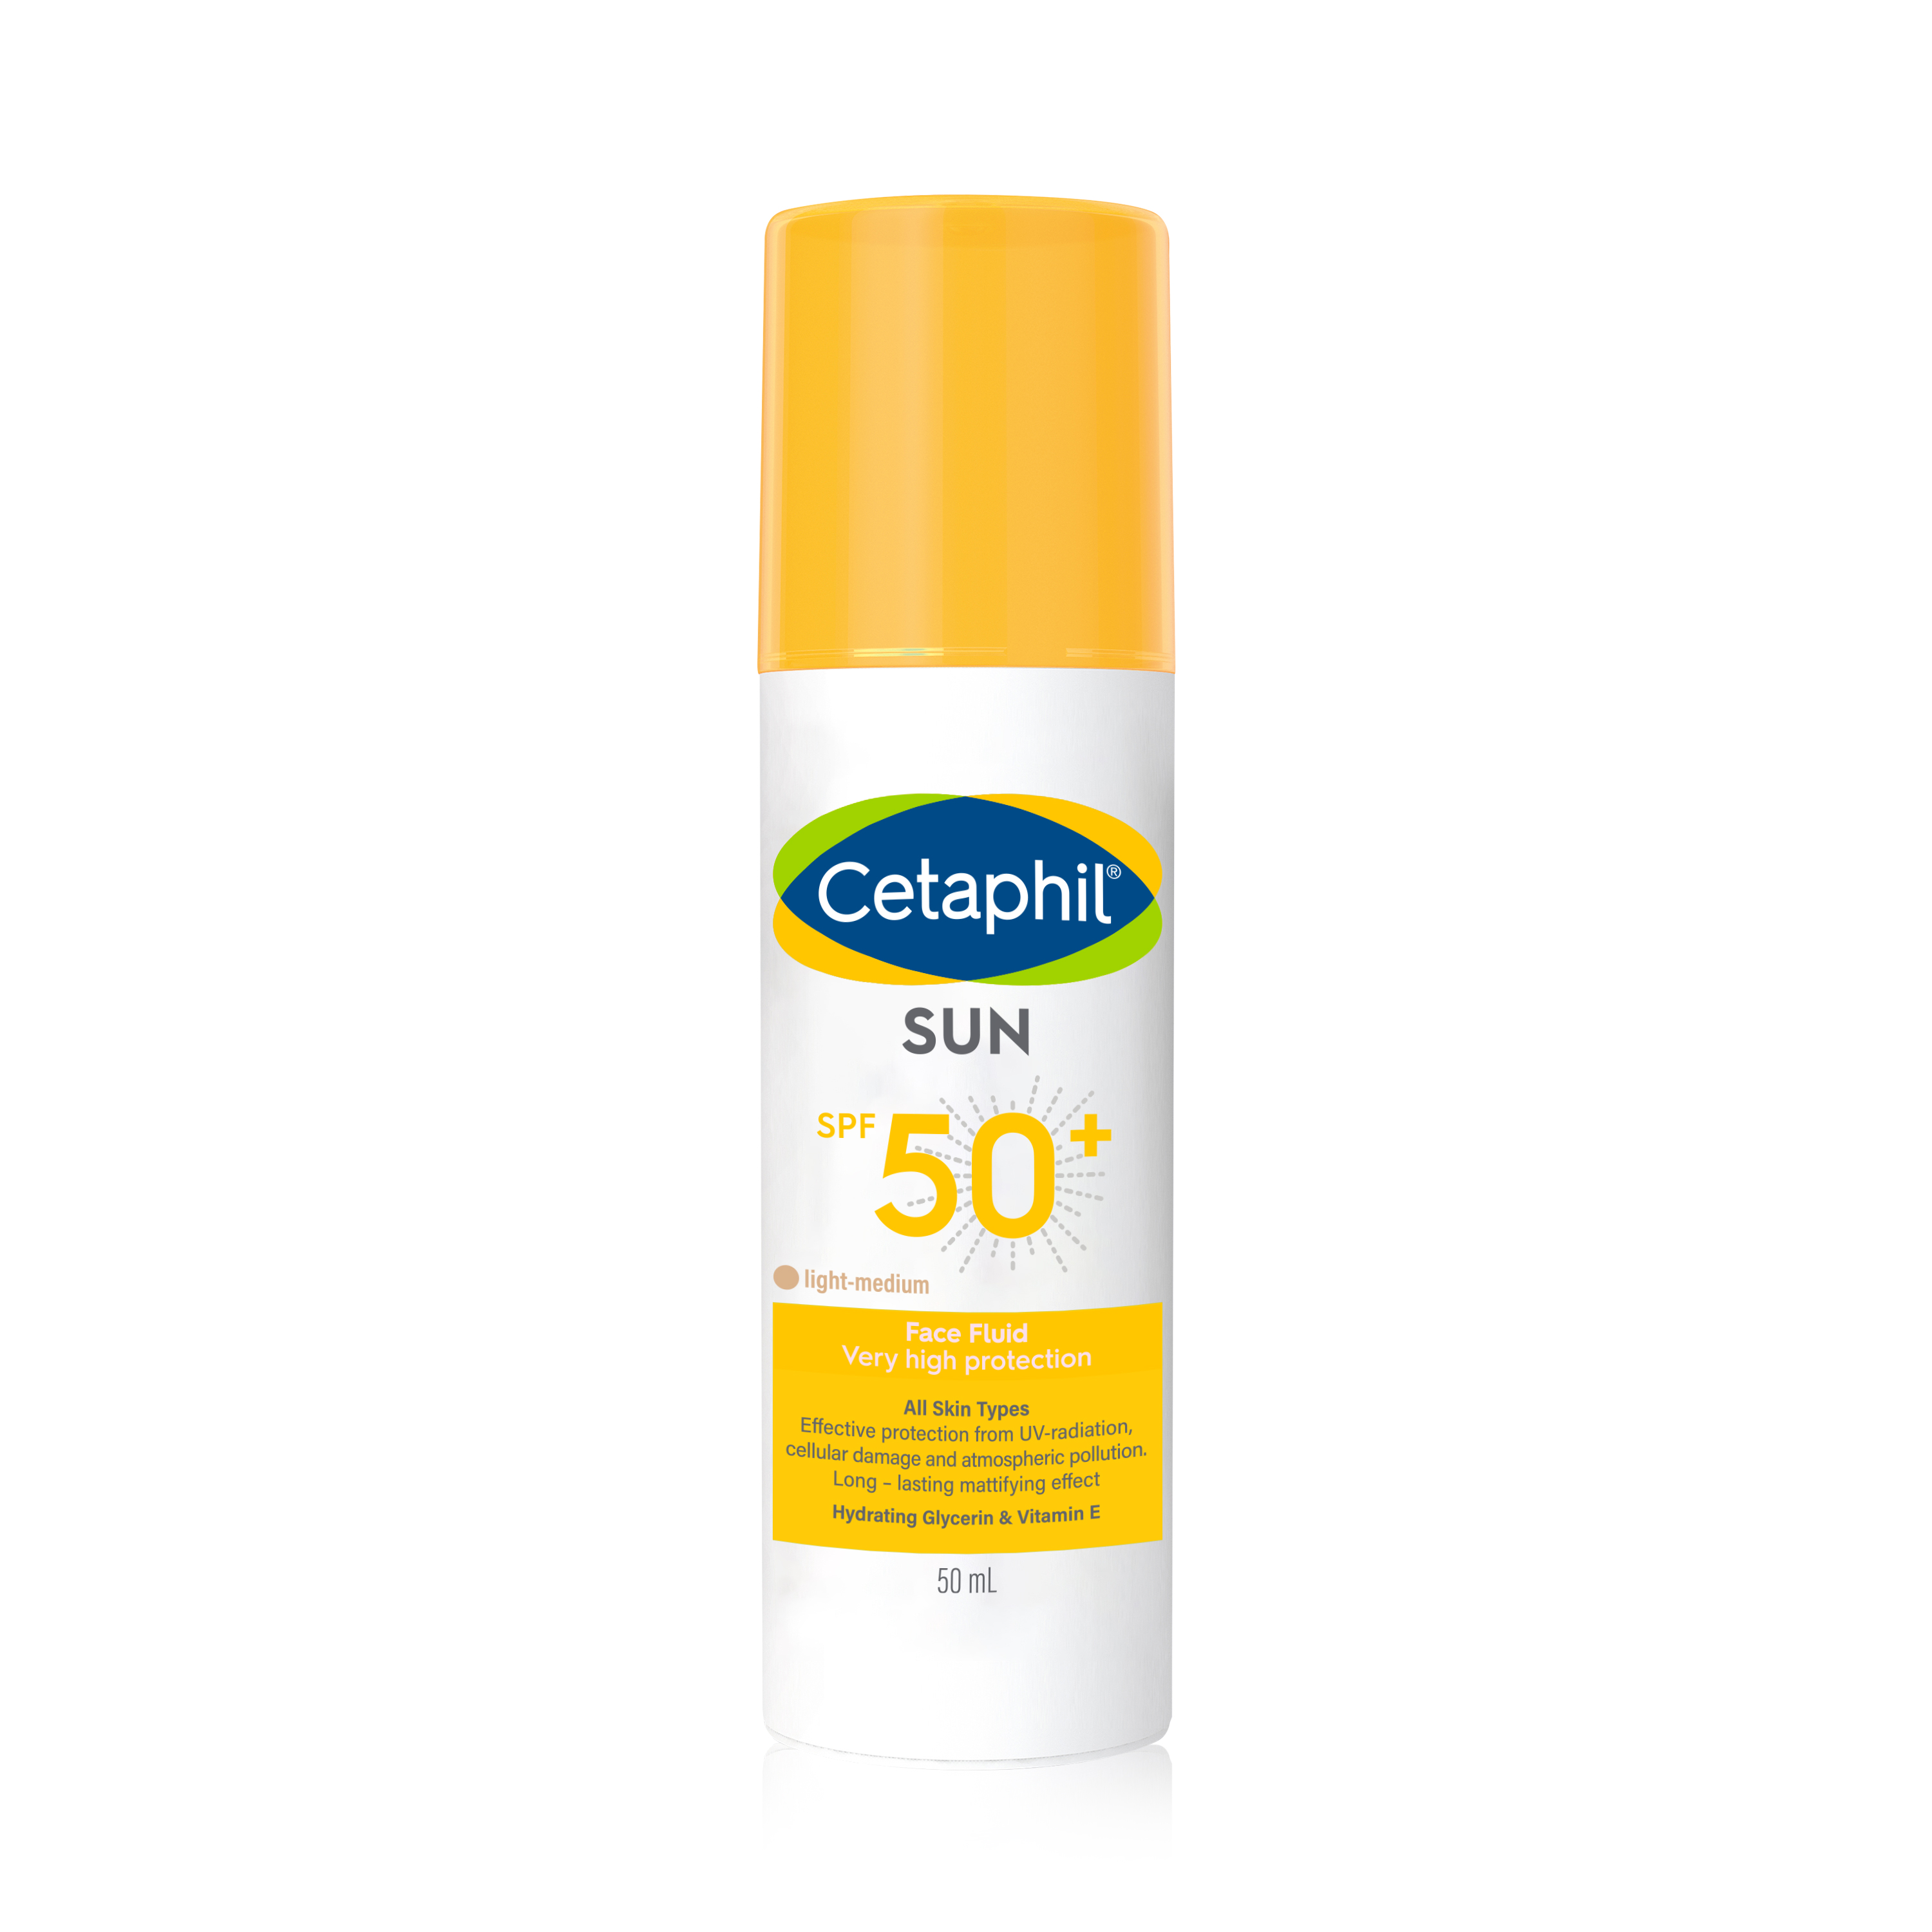 CETAPHIL SUN FACE FLUIDE TEINTE SPF50+ SPF50+